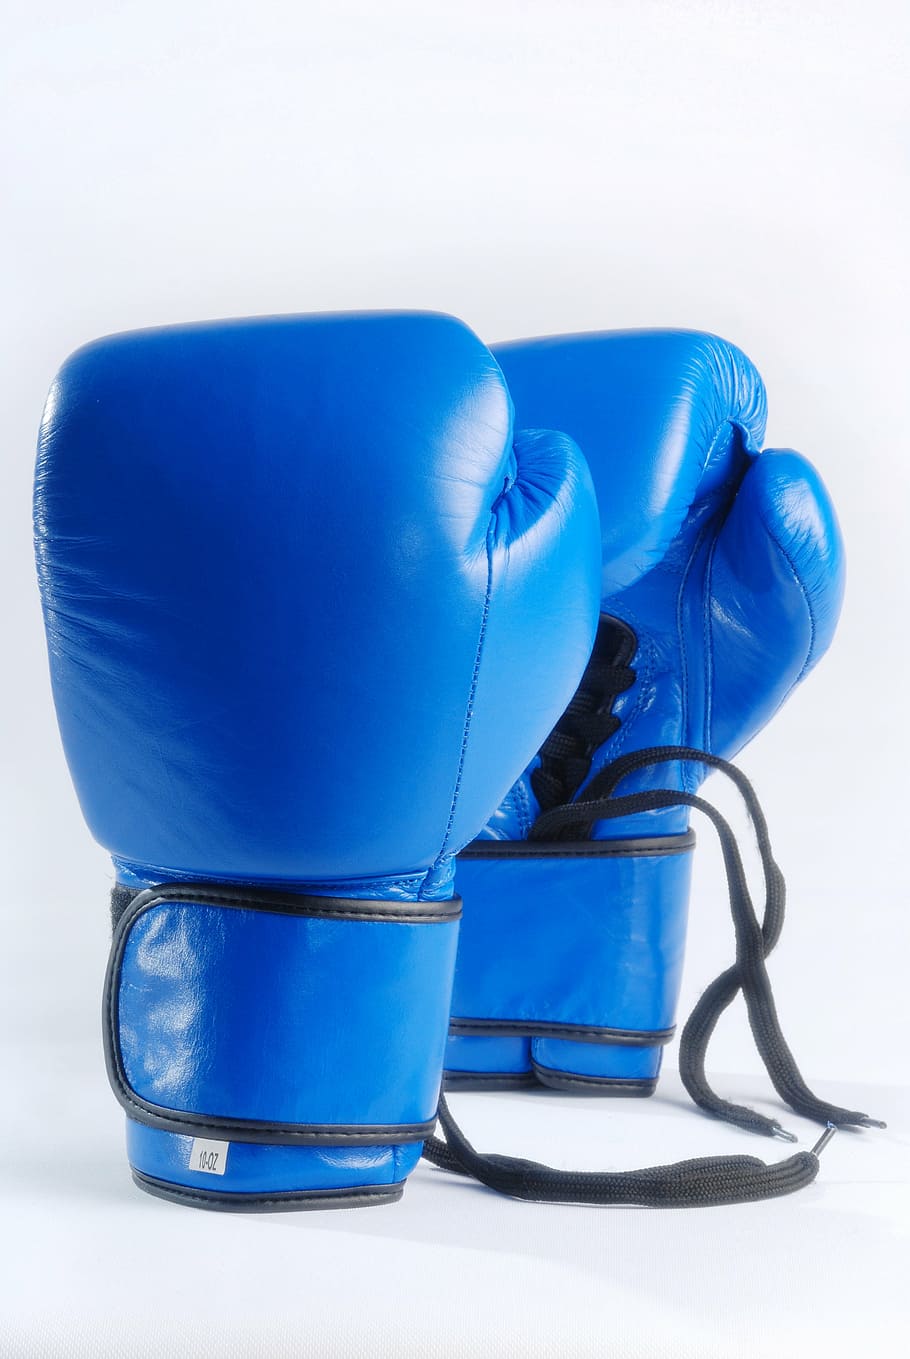 par, azul, luvas de boxe, luvas de boxe azuis, isoladas no fundo branco, luta, esporte, boxe, equipamento, competição